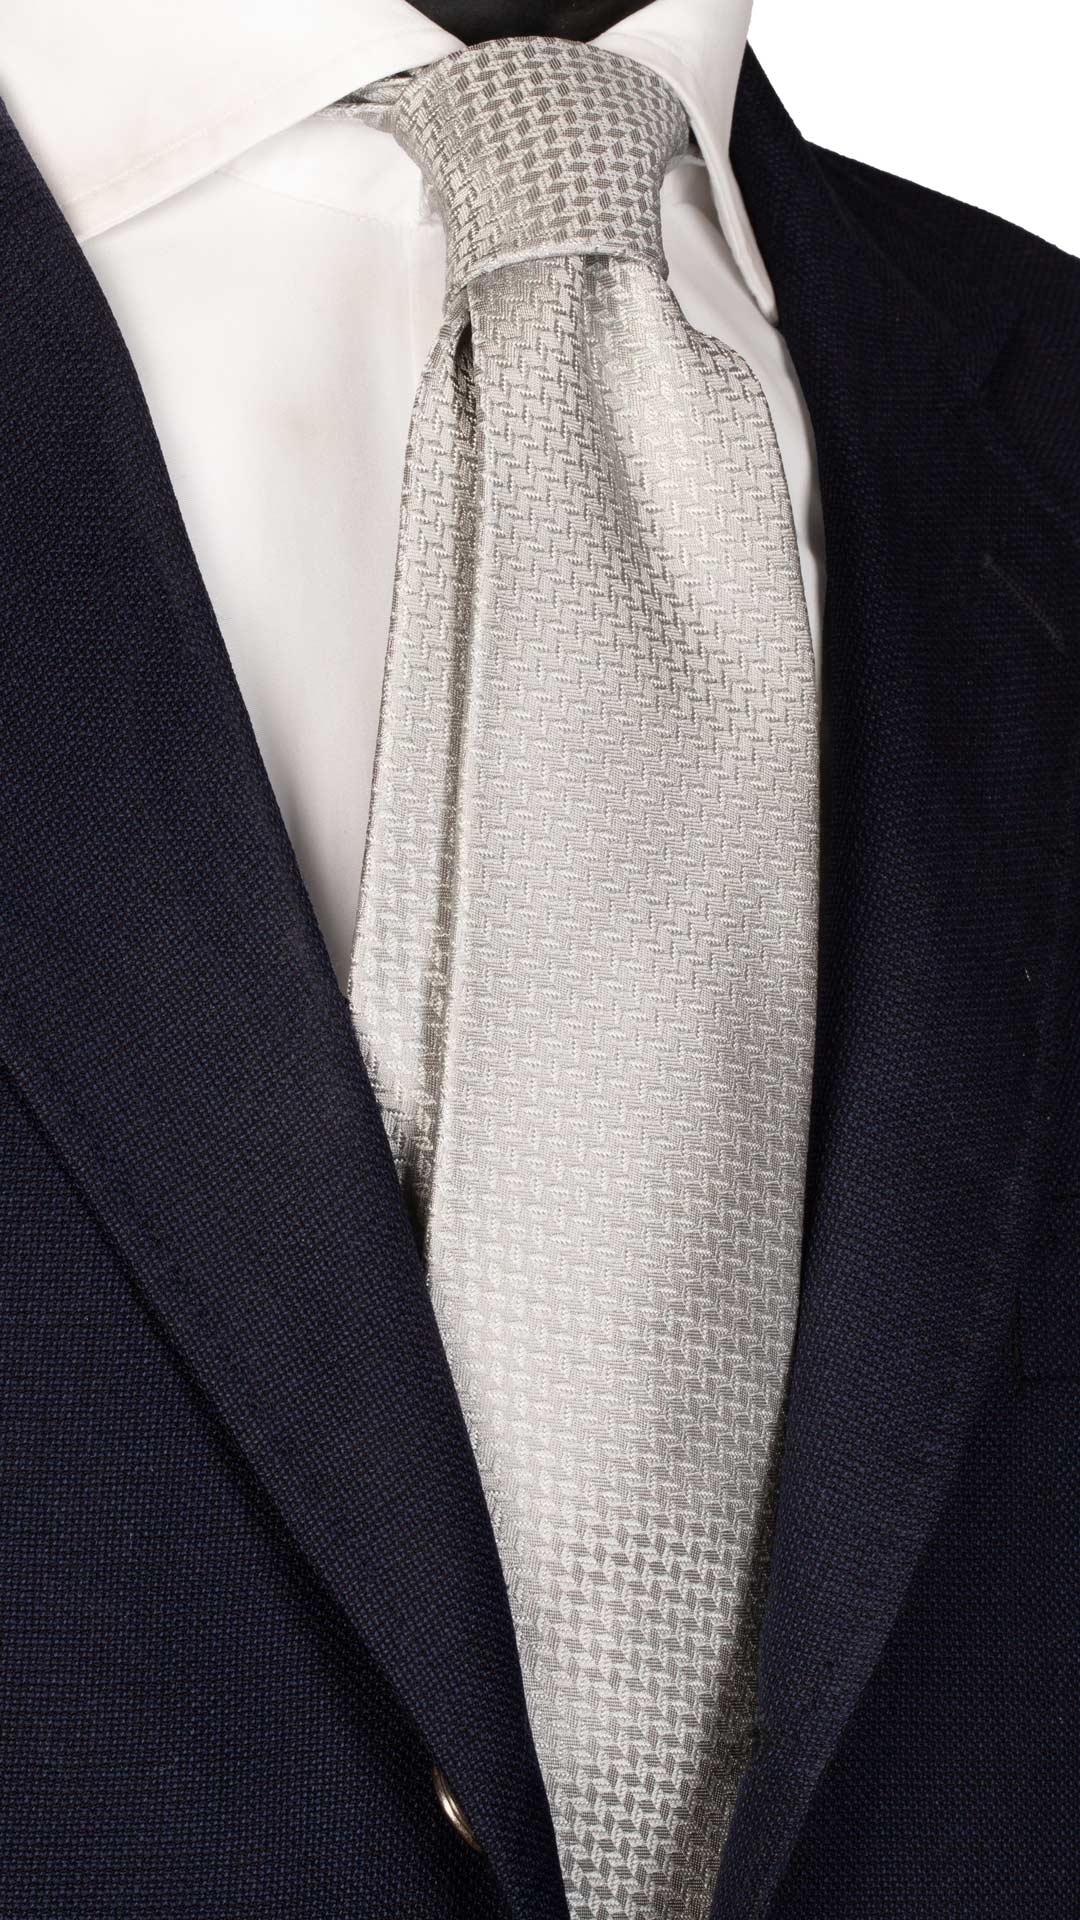 Cravatta da Cerimonia di Seta Grigio Argento Fantasia Bianca Made in Italy Graffeo Cravatte